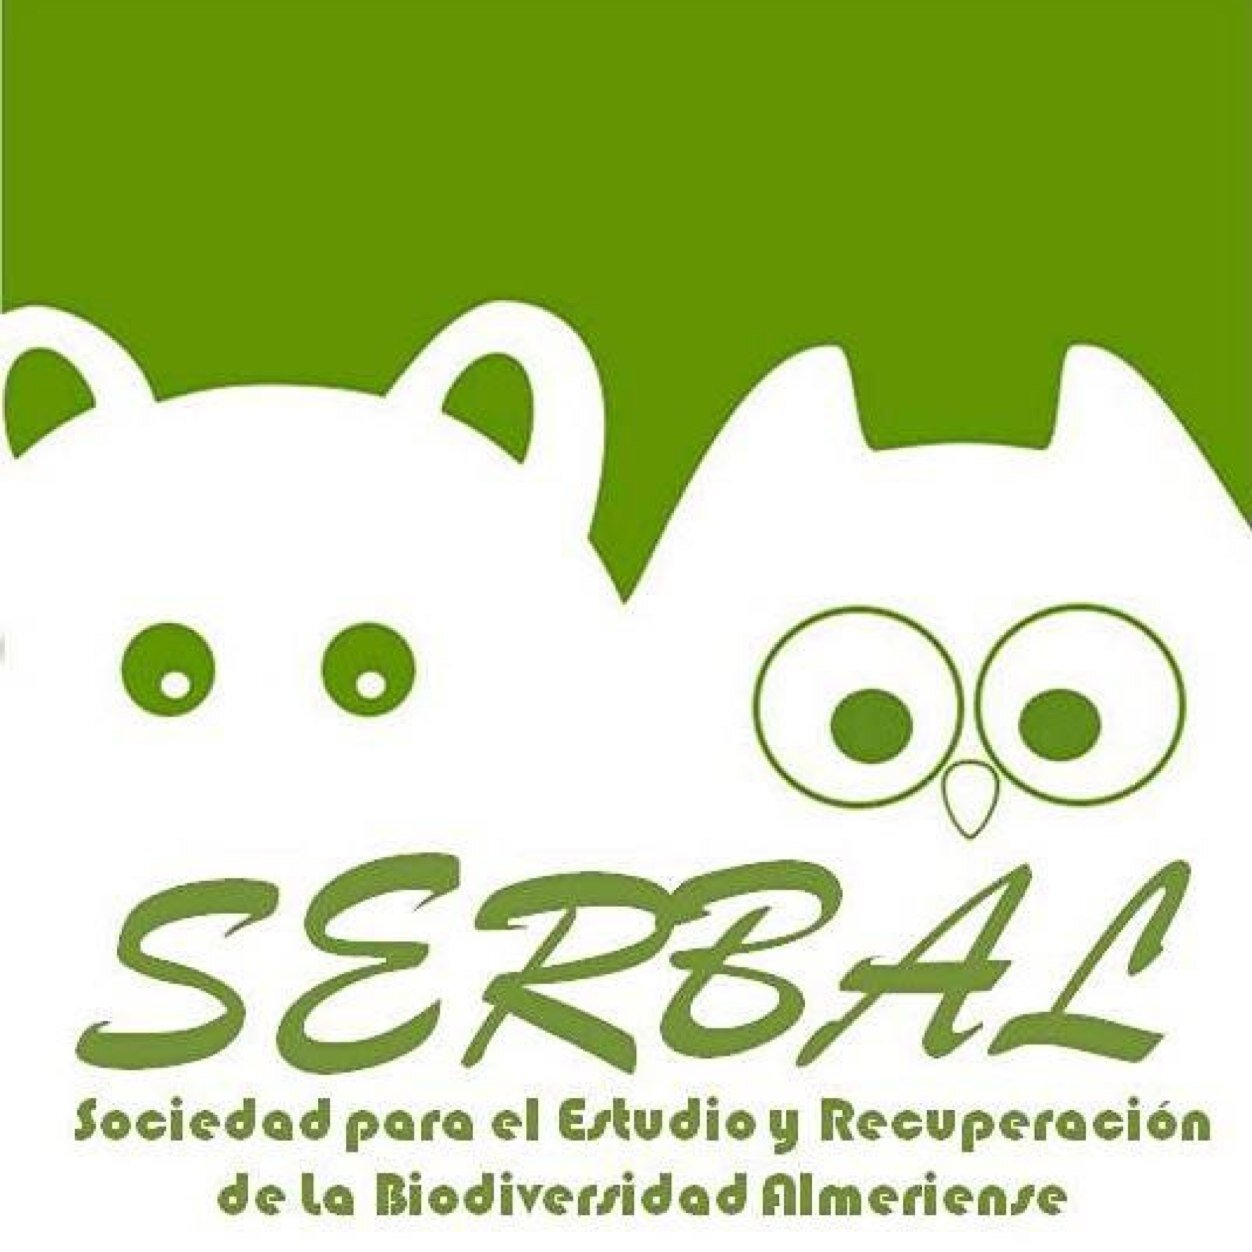 -SERBAL- Sociedad para el Estudio y Recuperación de la Biodiverdidad Almeriense #EducaciónAmbiental #Conservacion #Almeria #Biodiversidad #PorLaNaturaleza